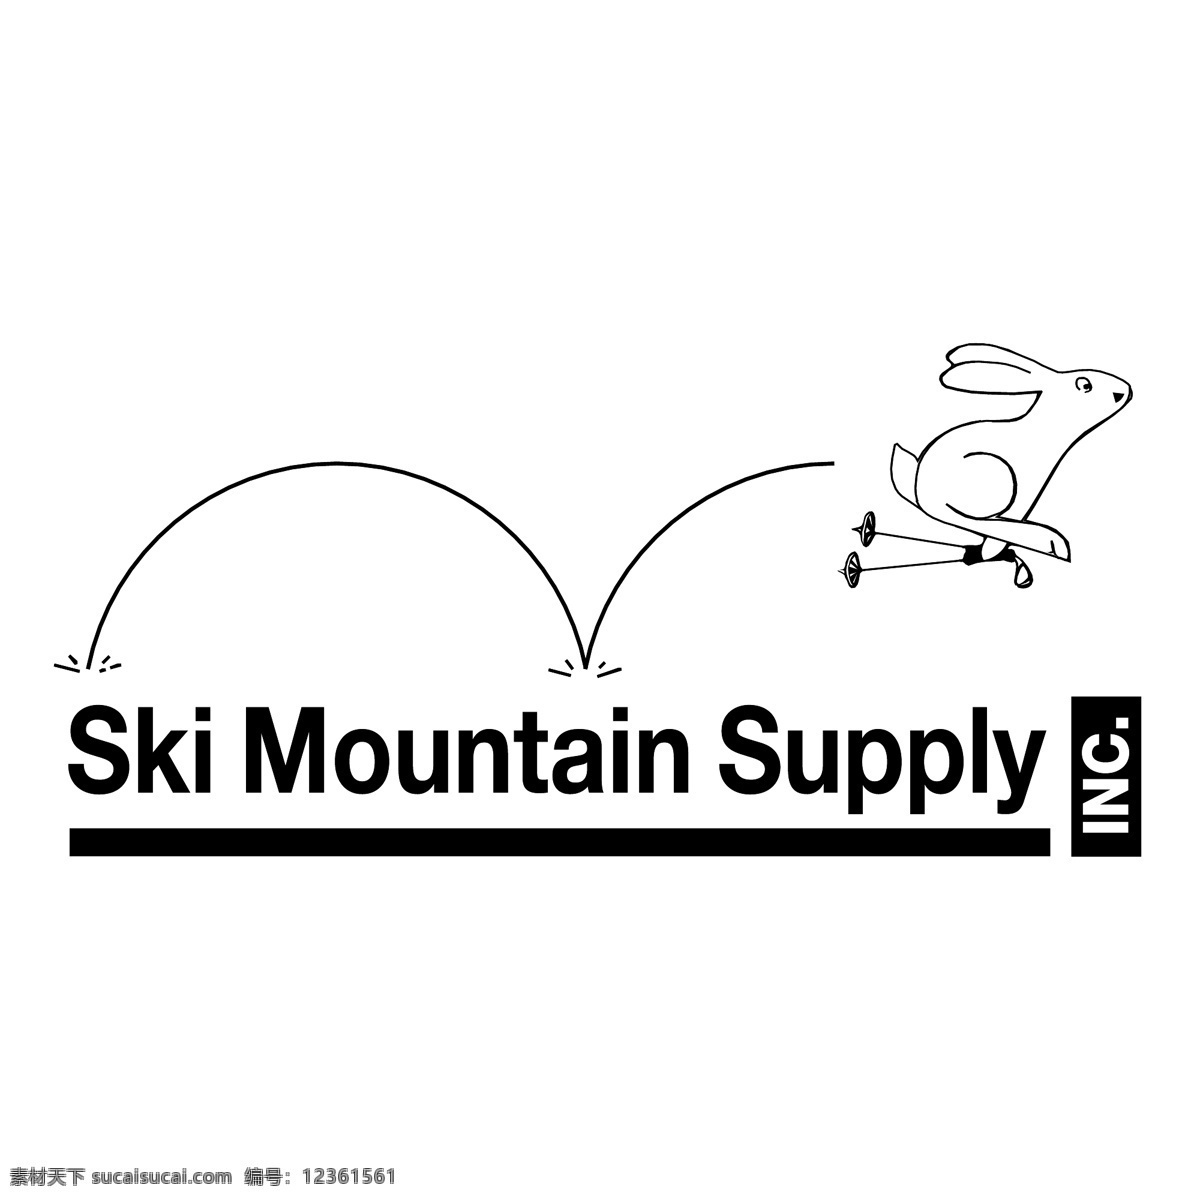 山 滑雪场 供应 滑雪 树 滑雪山 山的供应 供给 免费 矢量 雪山的滑雪场 矢量滑雪山 图 向量 向量山滑雪 矢量图 建筑家居